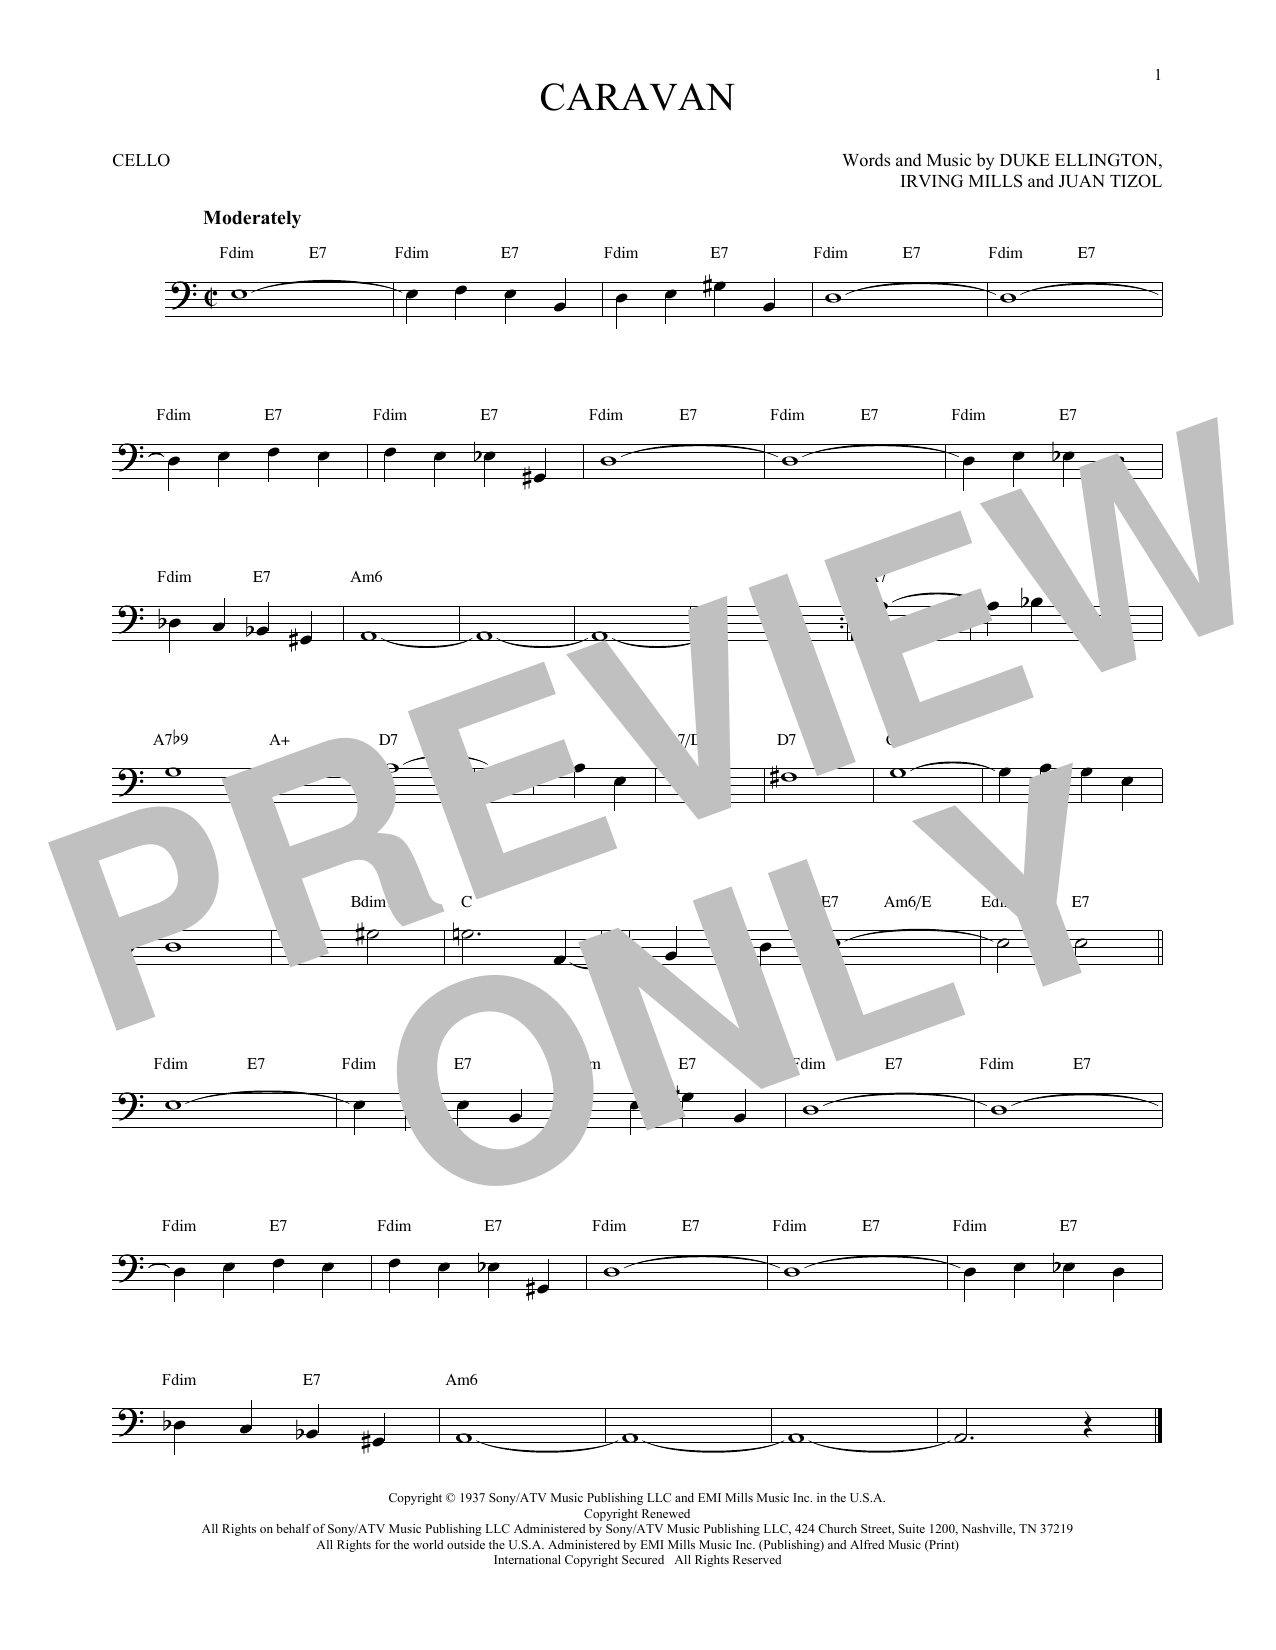 Download Juan Tizol & Duke Ellington Caravan Sheet Music and learn how to play Violin PDF digital score in minutes